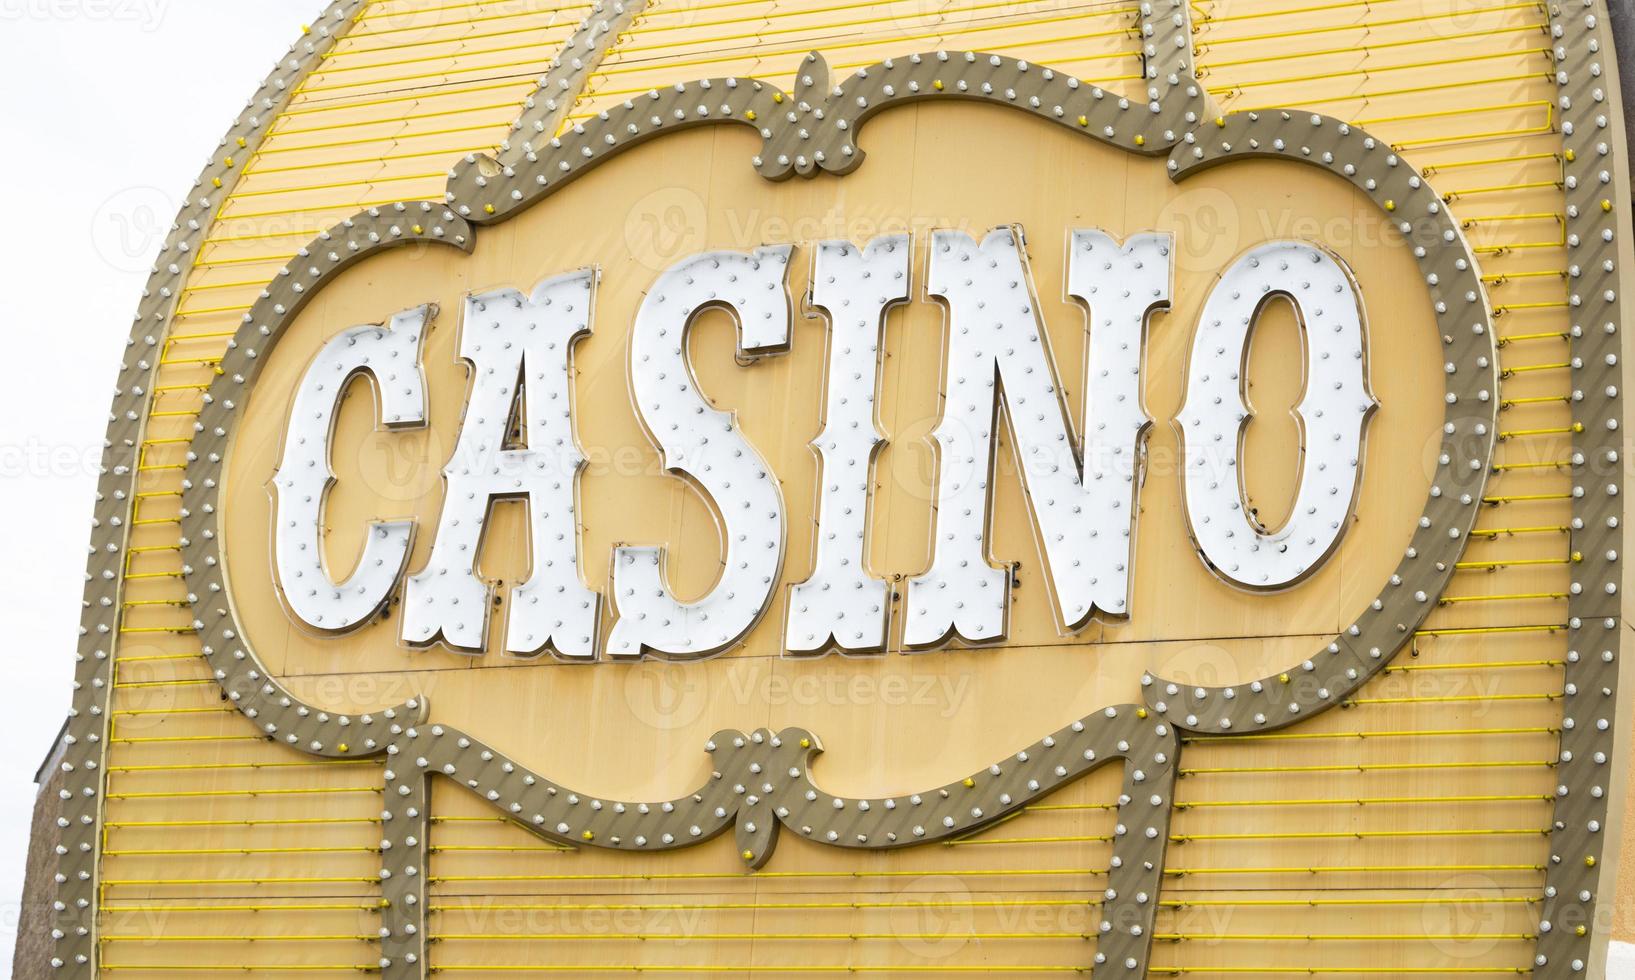 antik kasino tecken på byggnad foto